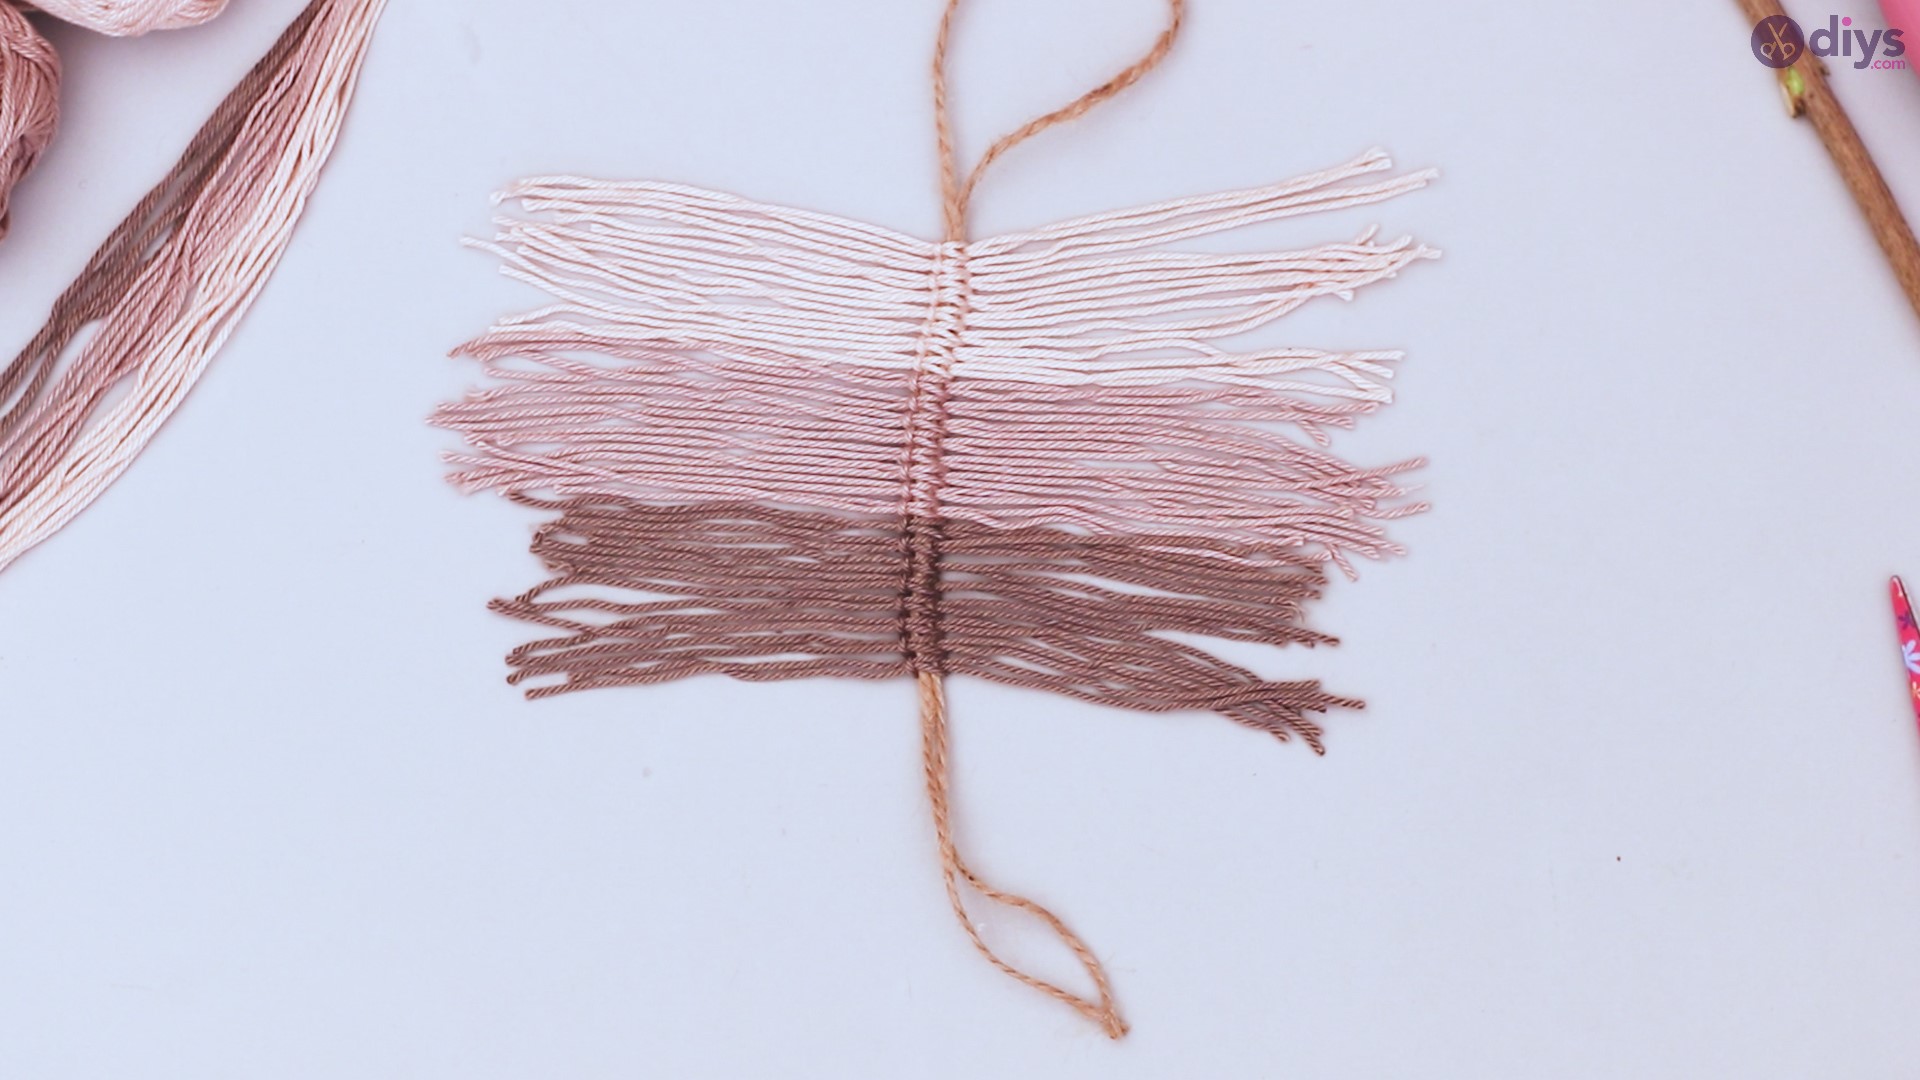 Diy yarn leaf wall decor tutorial (24)